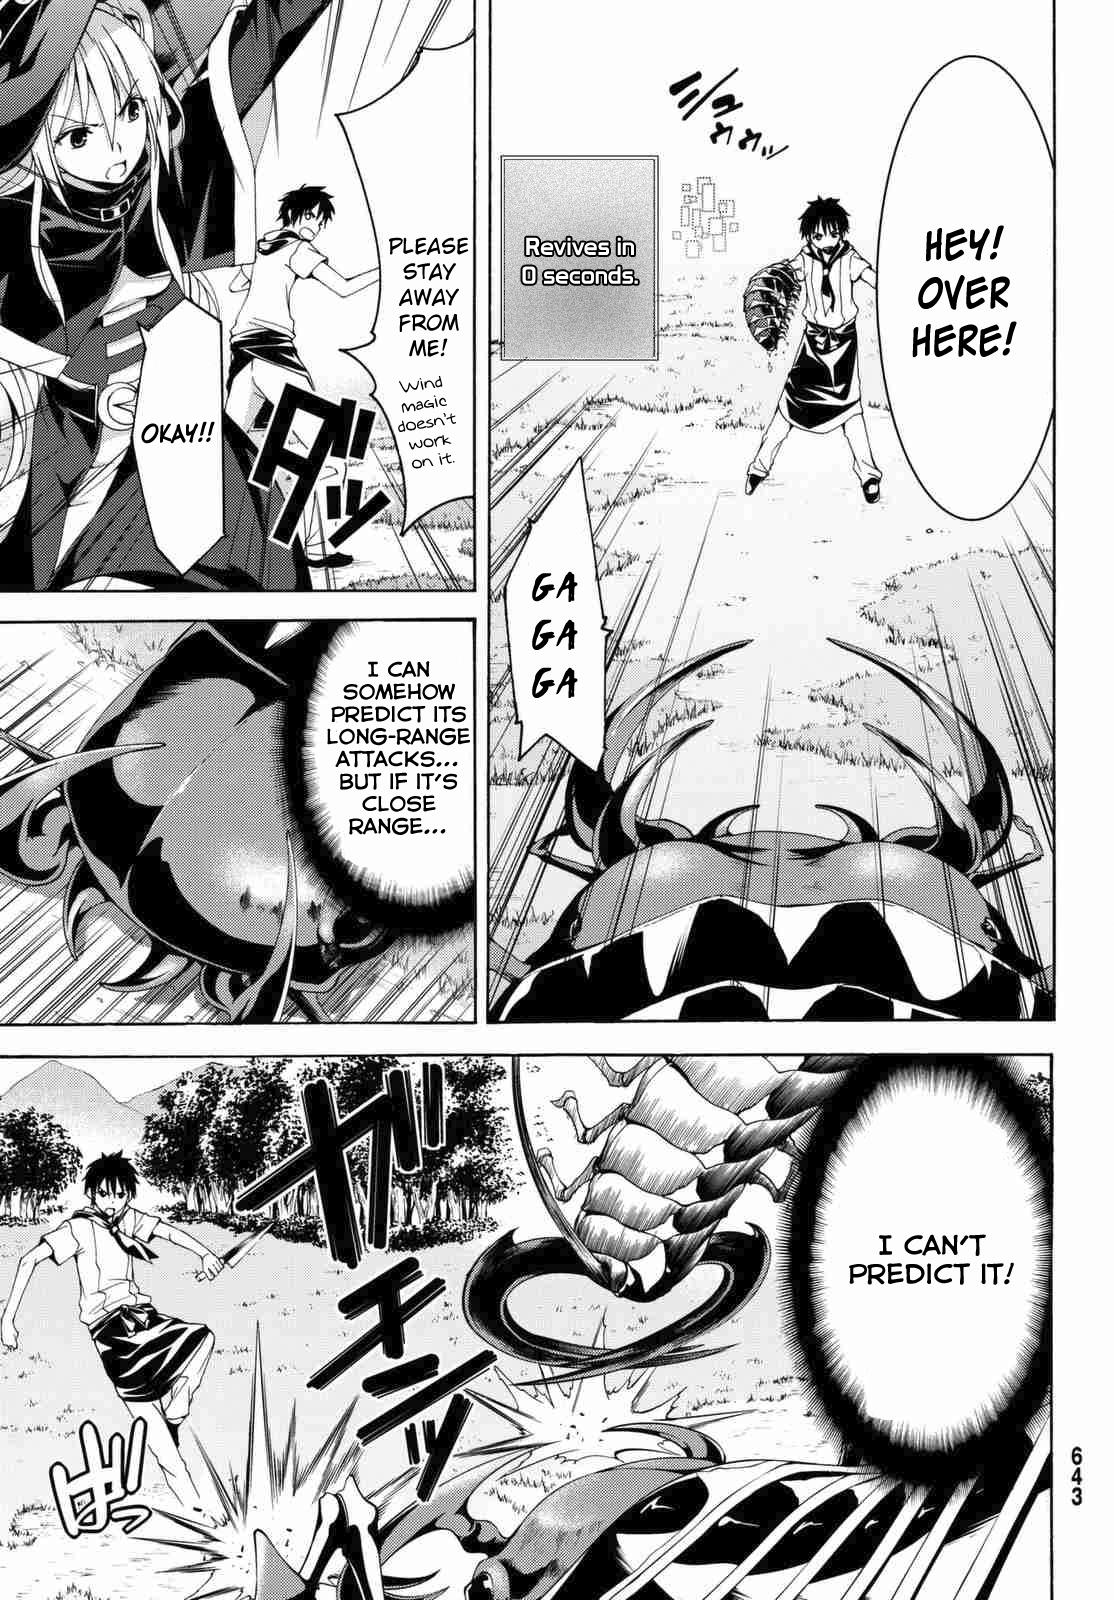 100-man no Inochi no Ue ni Ore wa Tatteiru Manga - Chapter 3.1